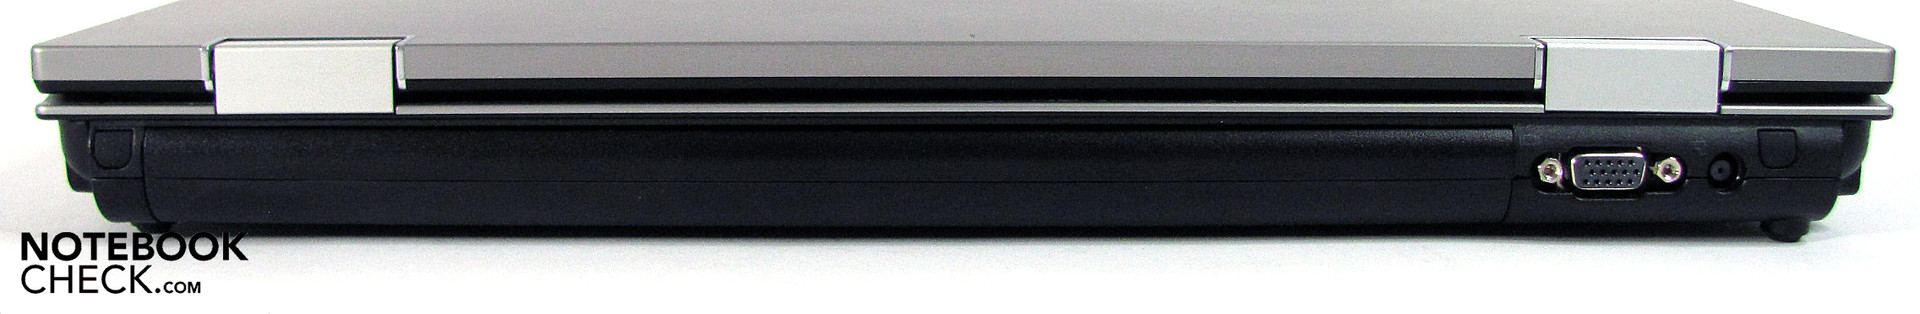 Review HP EliteBook 8540p Notebook - NotebookCheck.net Reviews